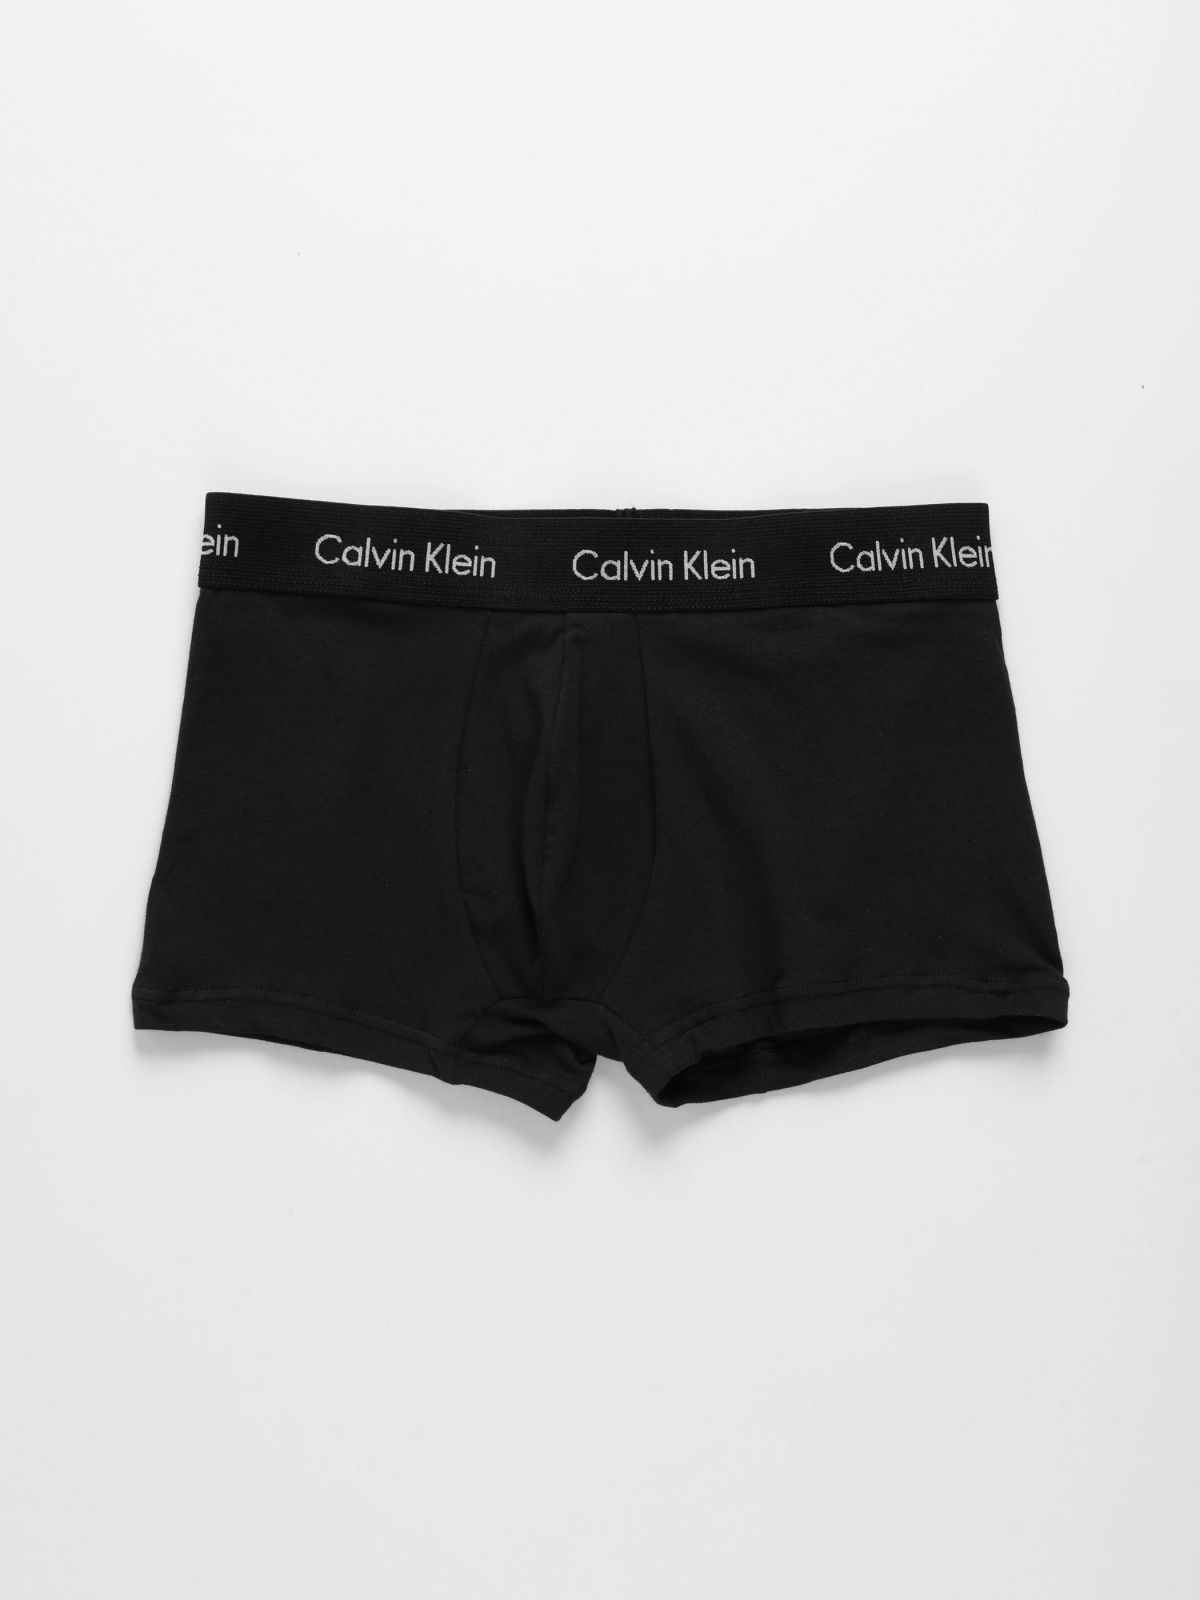  מארז 3 תחתוני בוקסר עם לוגו / גברים של CALVIN KLEIN